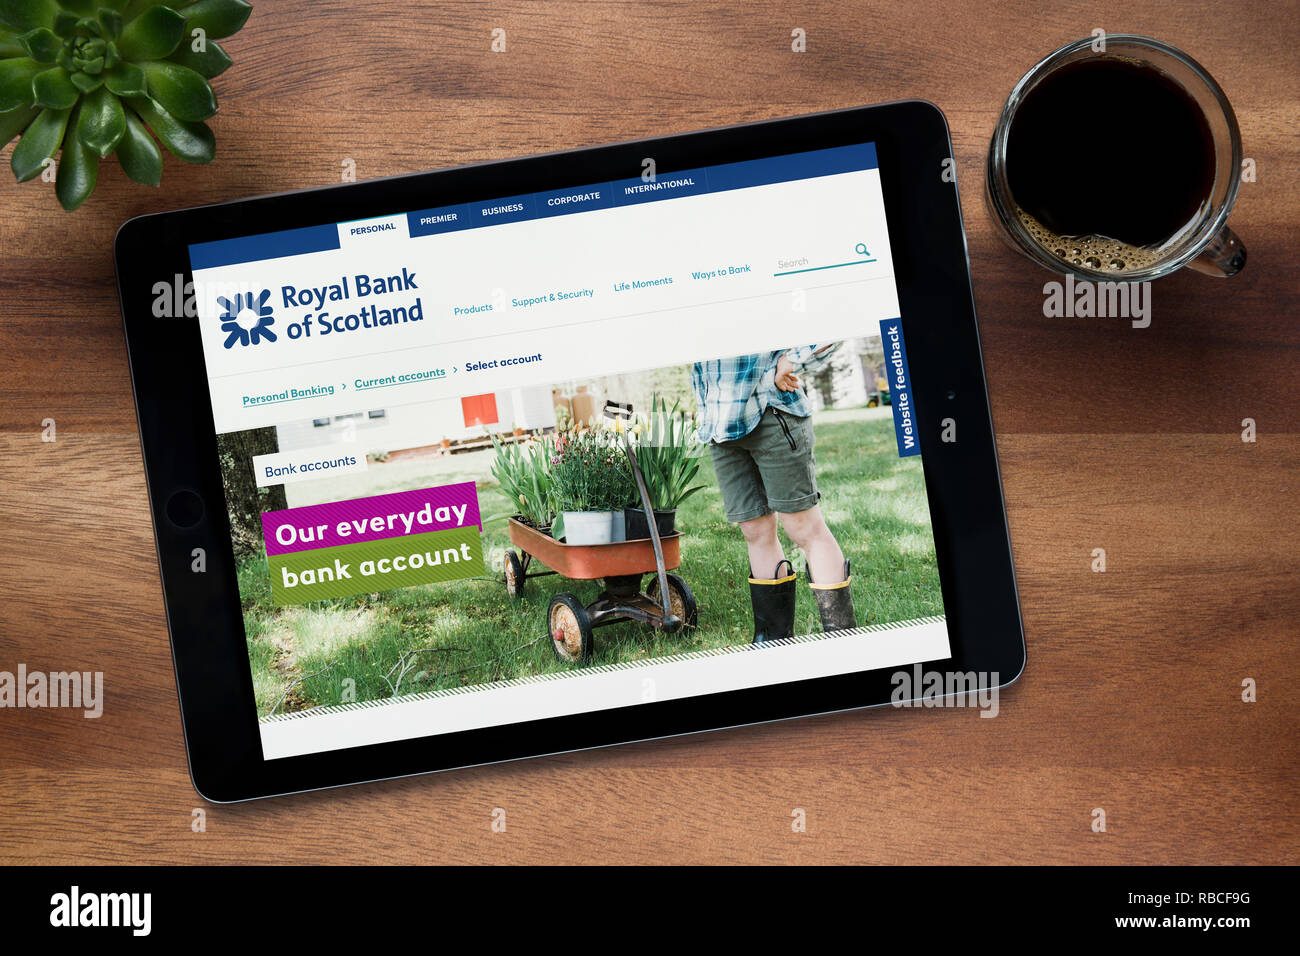 Le site web de la Banque Royale d'Écosse est vu sur un iPad tablet, sur une table en bois avec une machine à expresso et d'une plante (rédaction uniquement). Banque D'Images